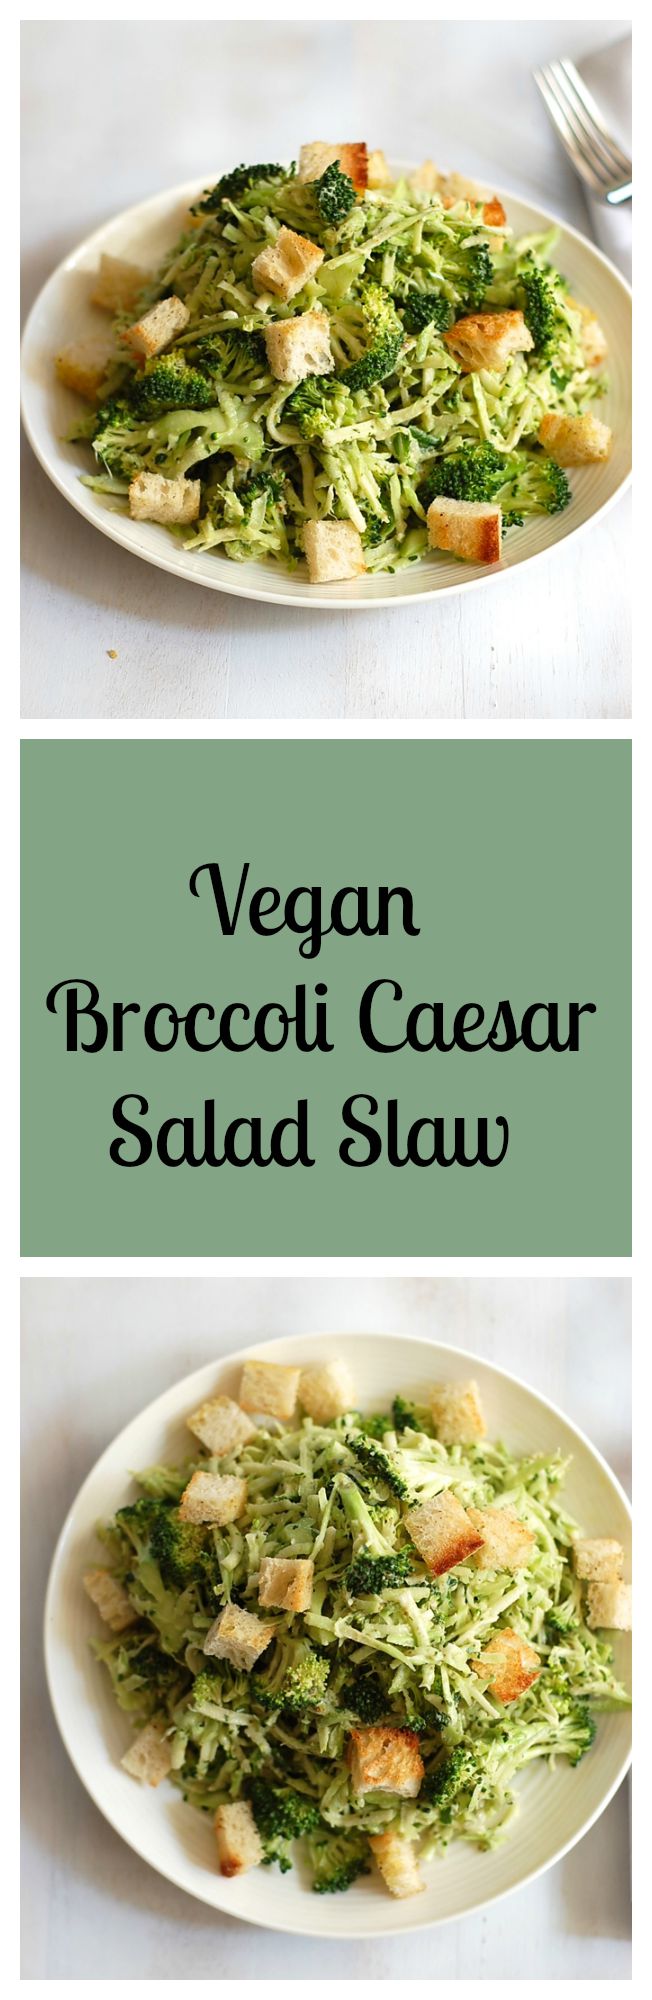 Vegan Broccoli Caesar Salad Slaw. Recipe at turniptheoven.com